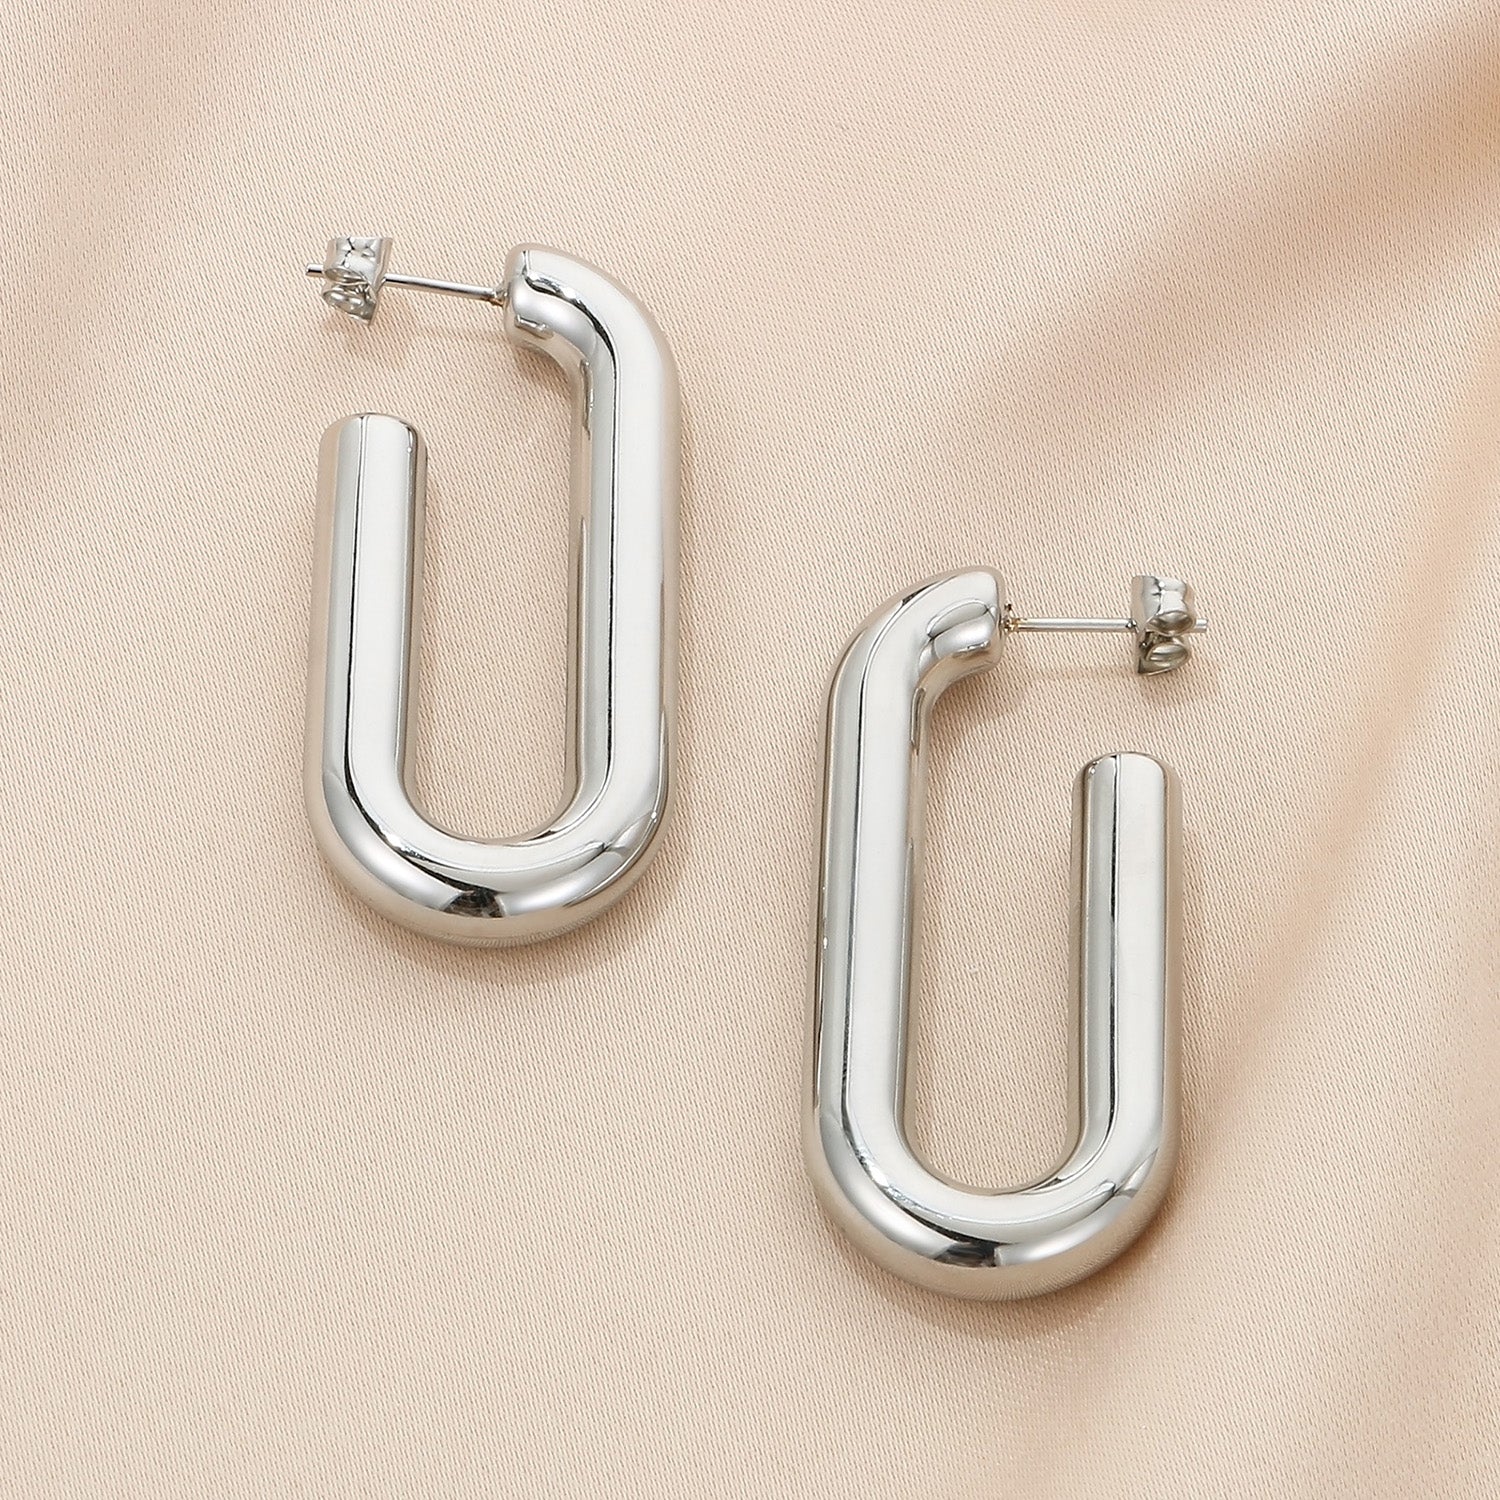 Stainless Steel Hinged Hoop Earrings - Body By J'ne